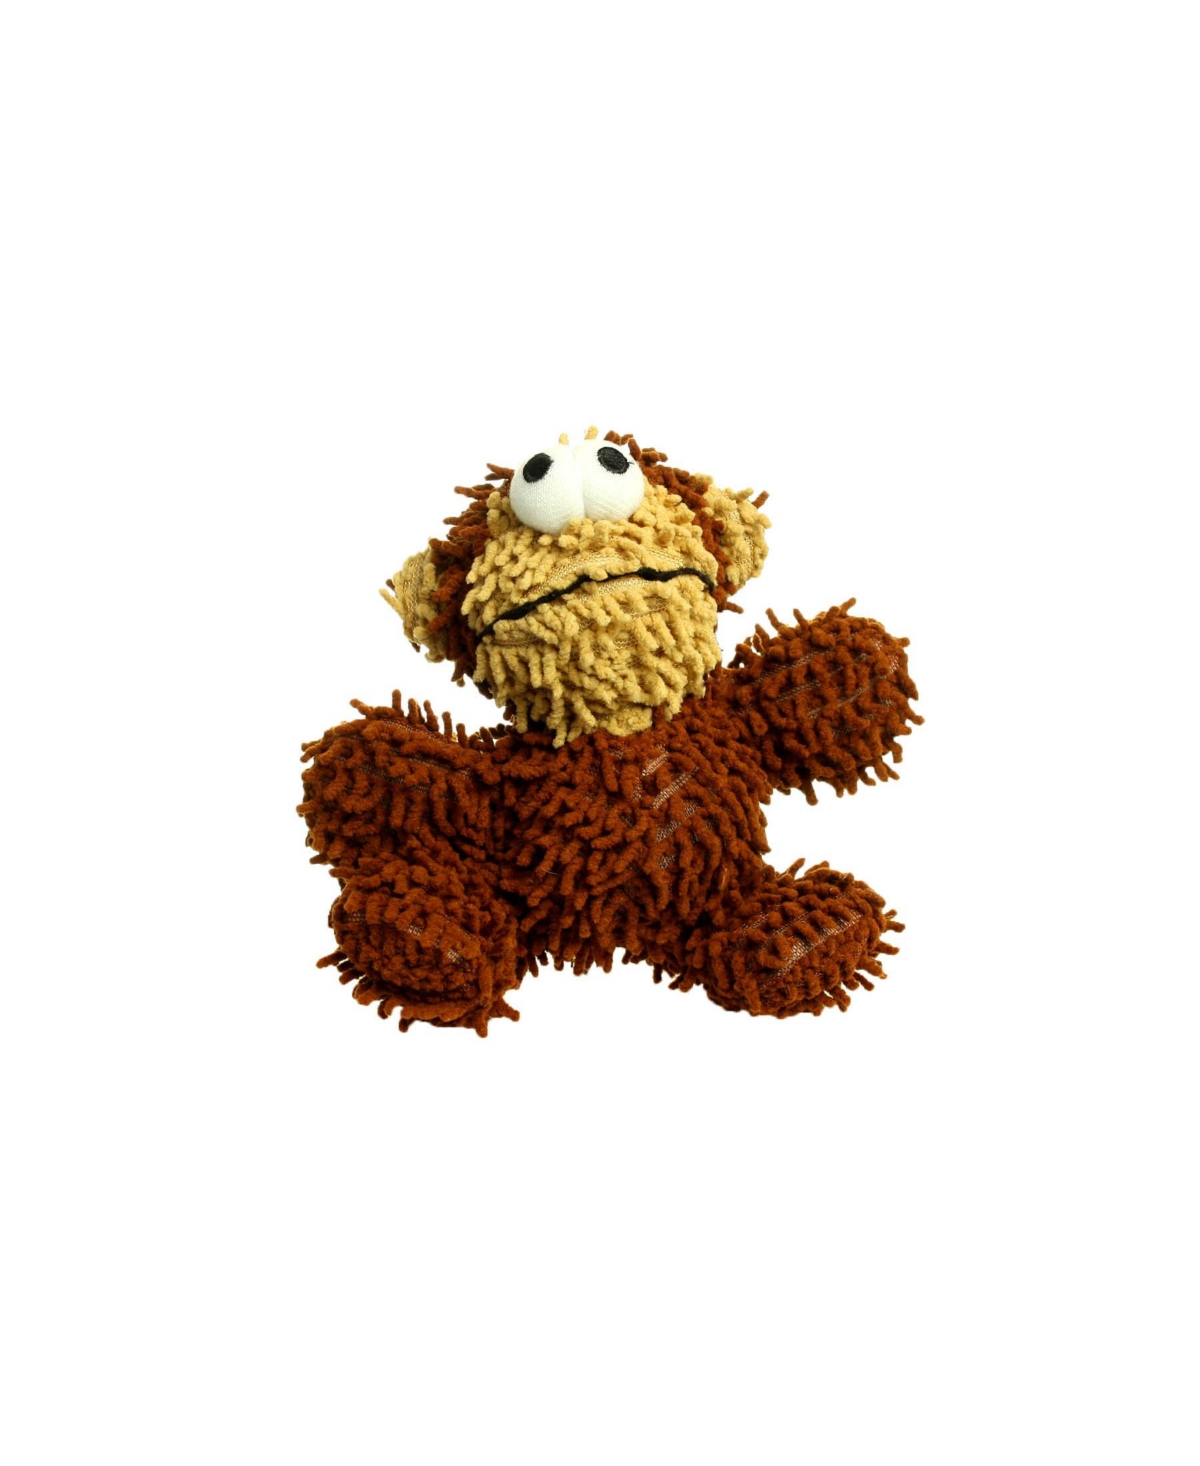 Jr Microfiber Ball Monkey, Dog Toy - Brown